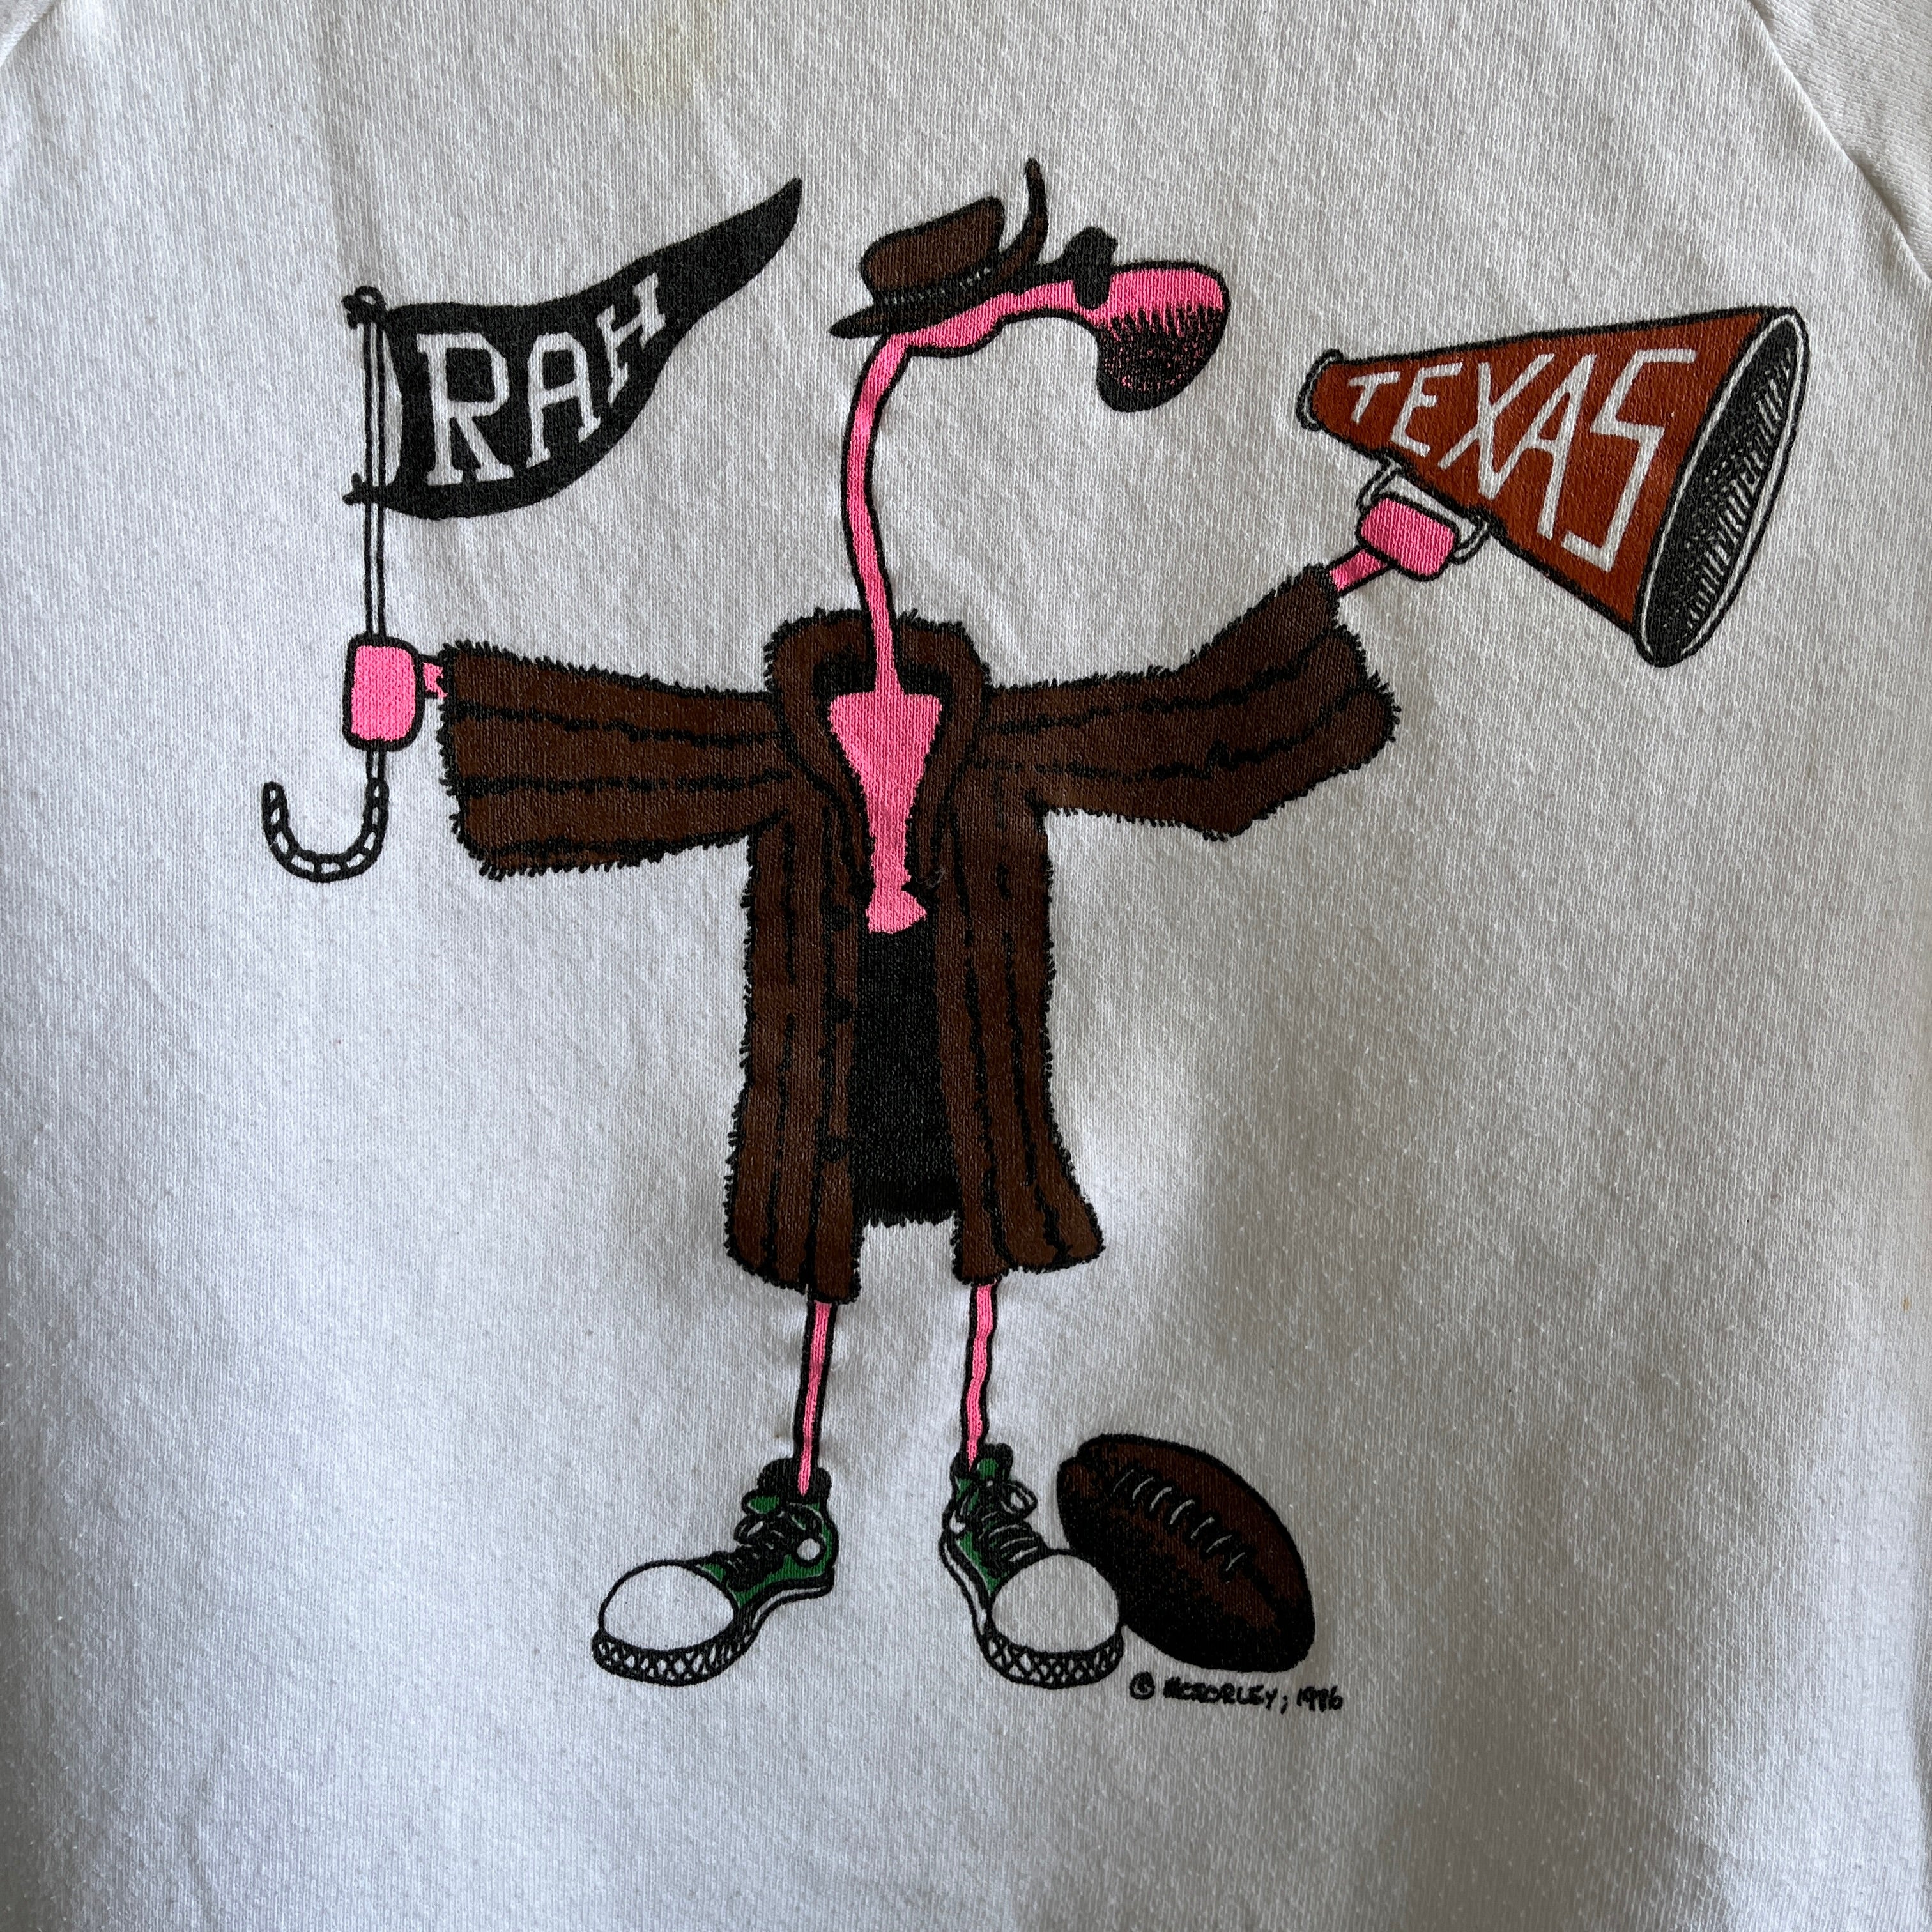 1986 Rah UT University of Texas Rad Graphic Sweat-shirt